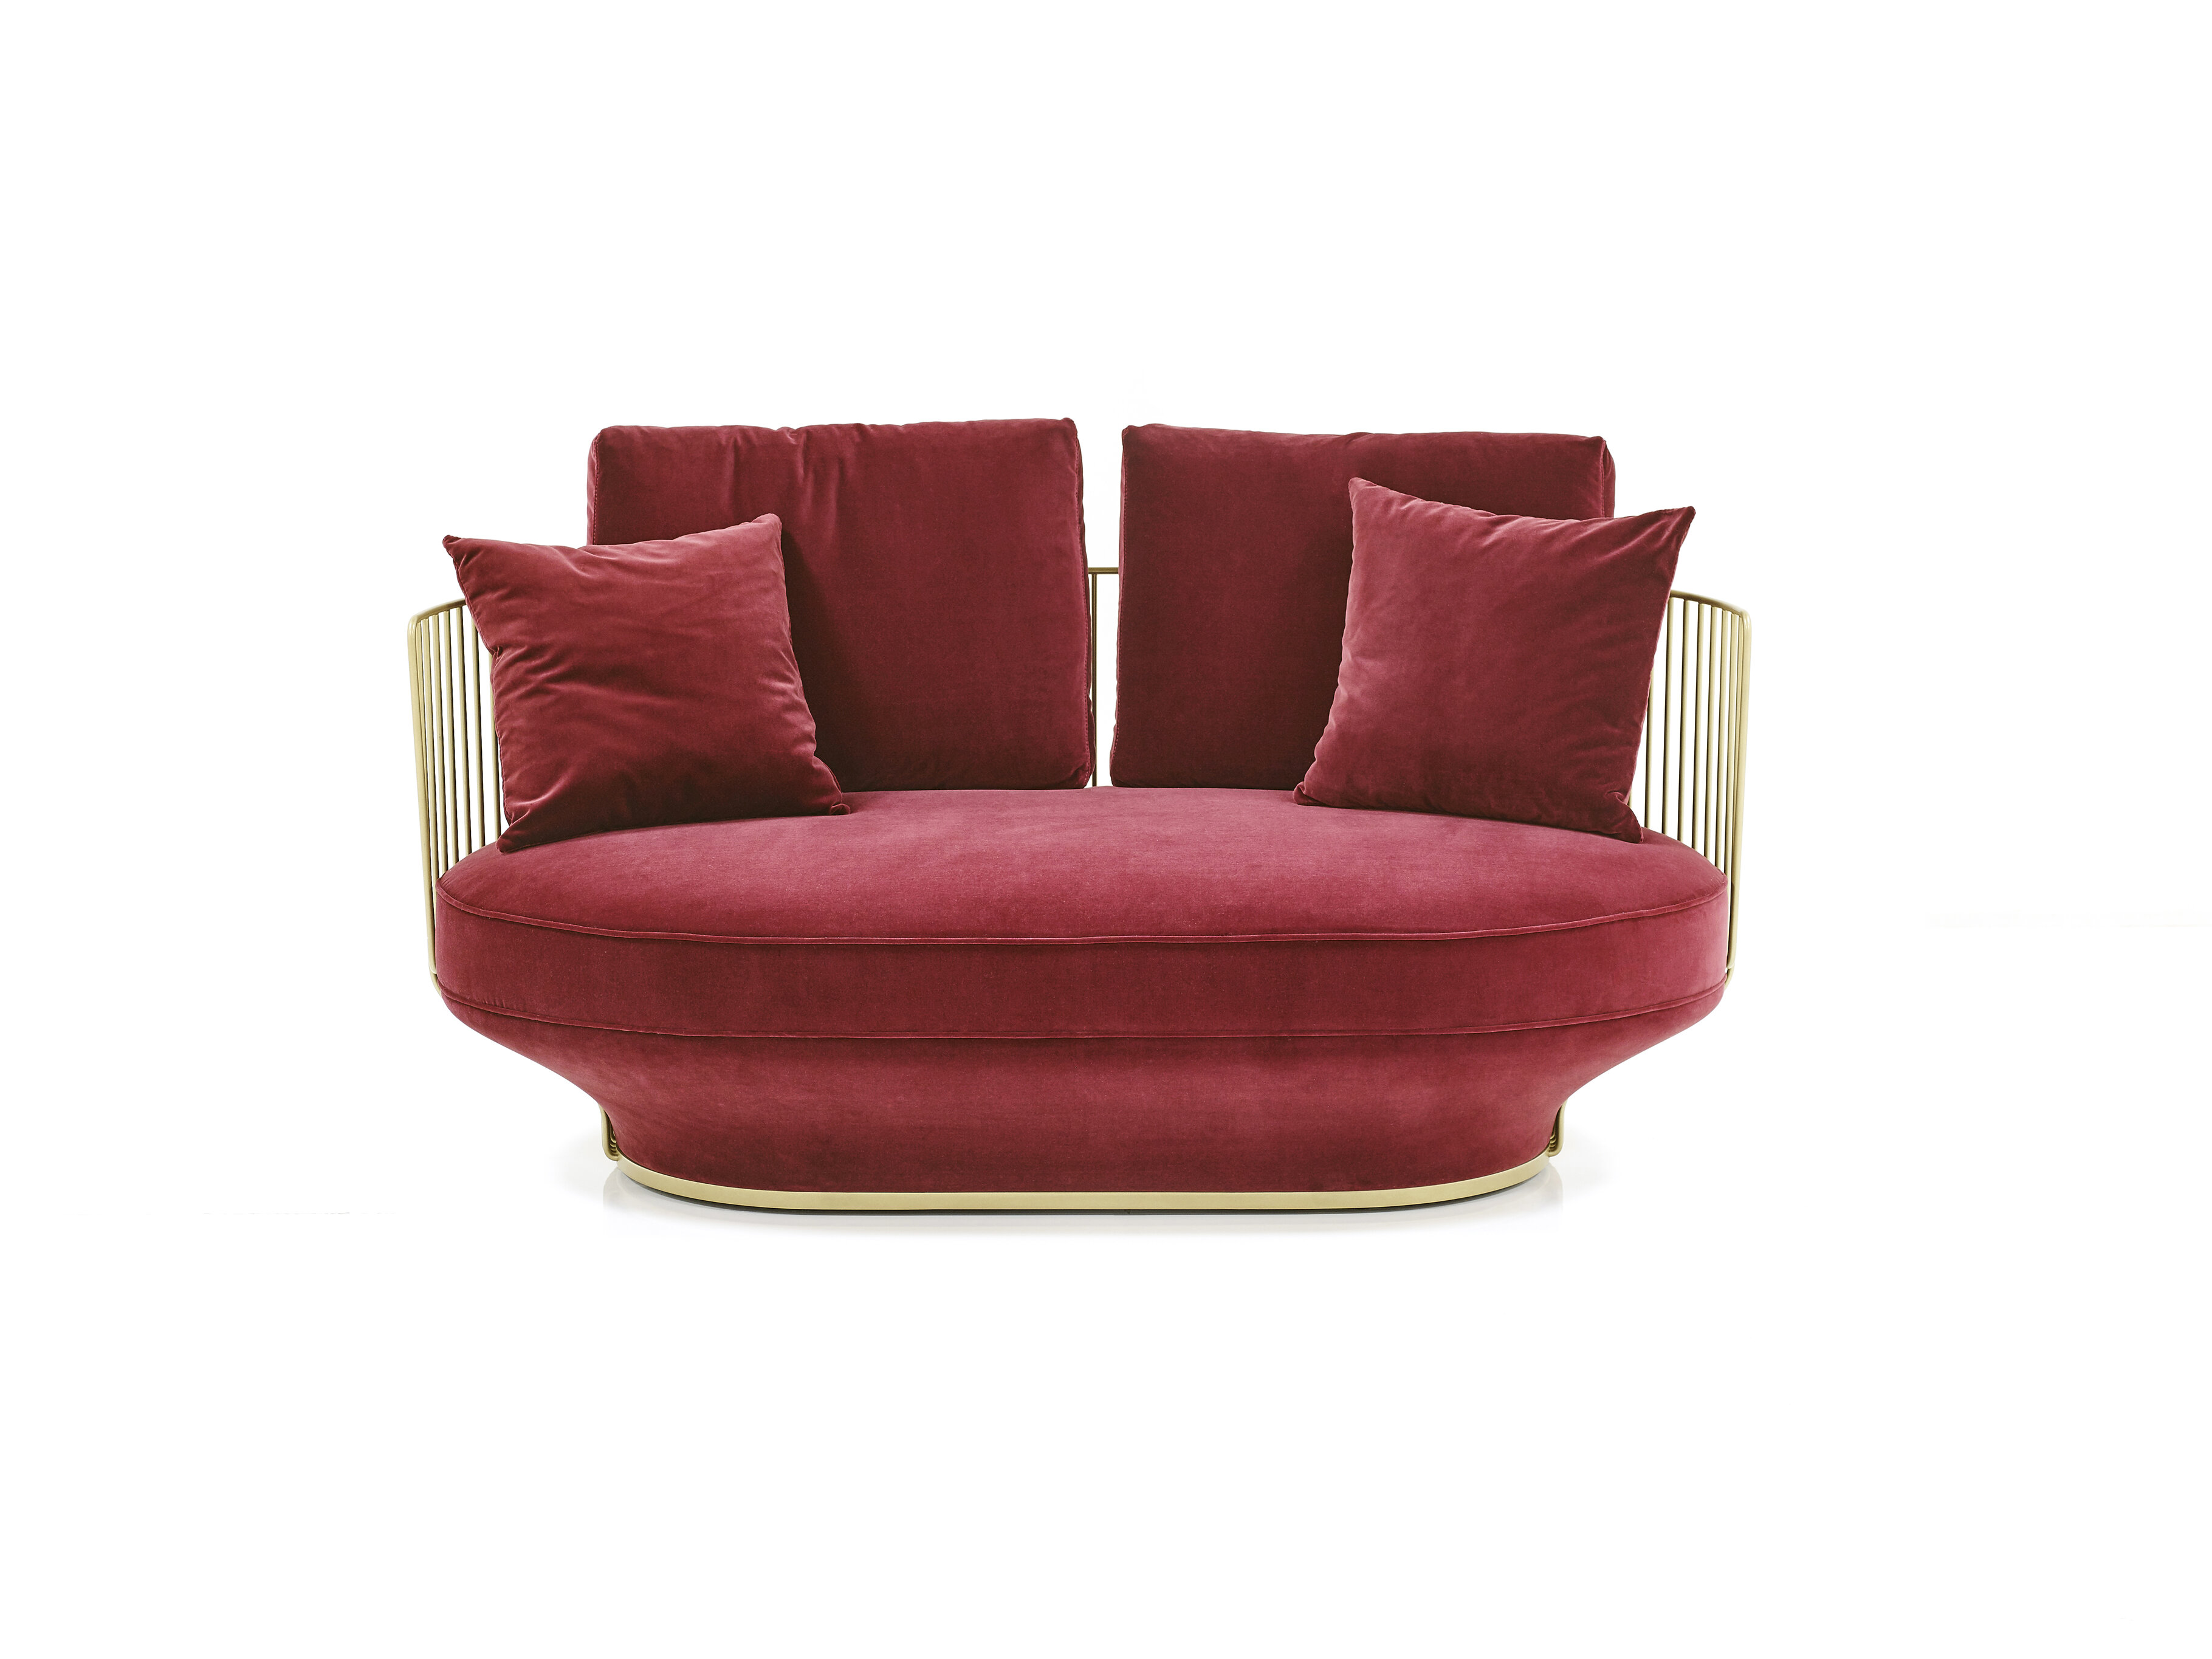 Zweisitziges Sofa mit Metallgerüst und mit bordaux rotem Samt bezogenen Sitzkissen